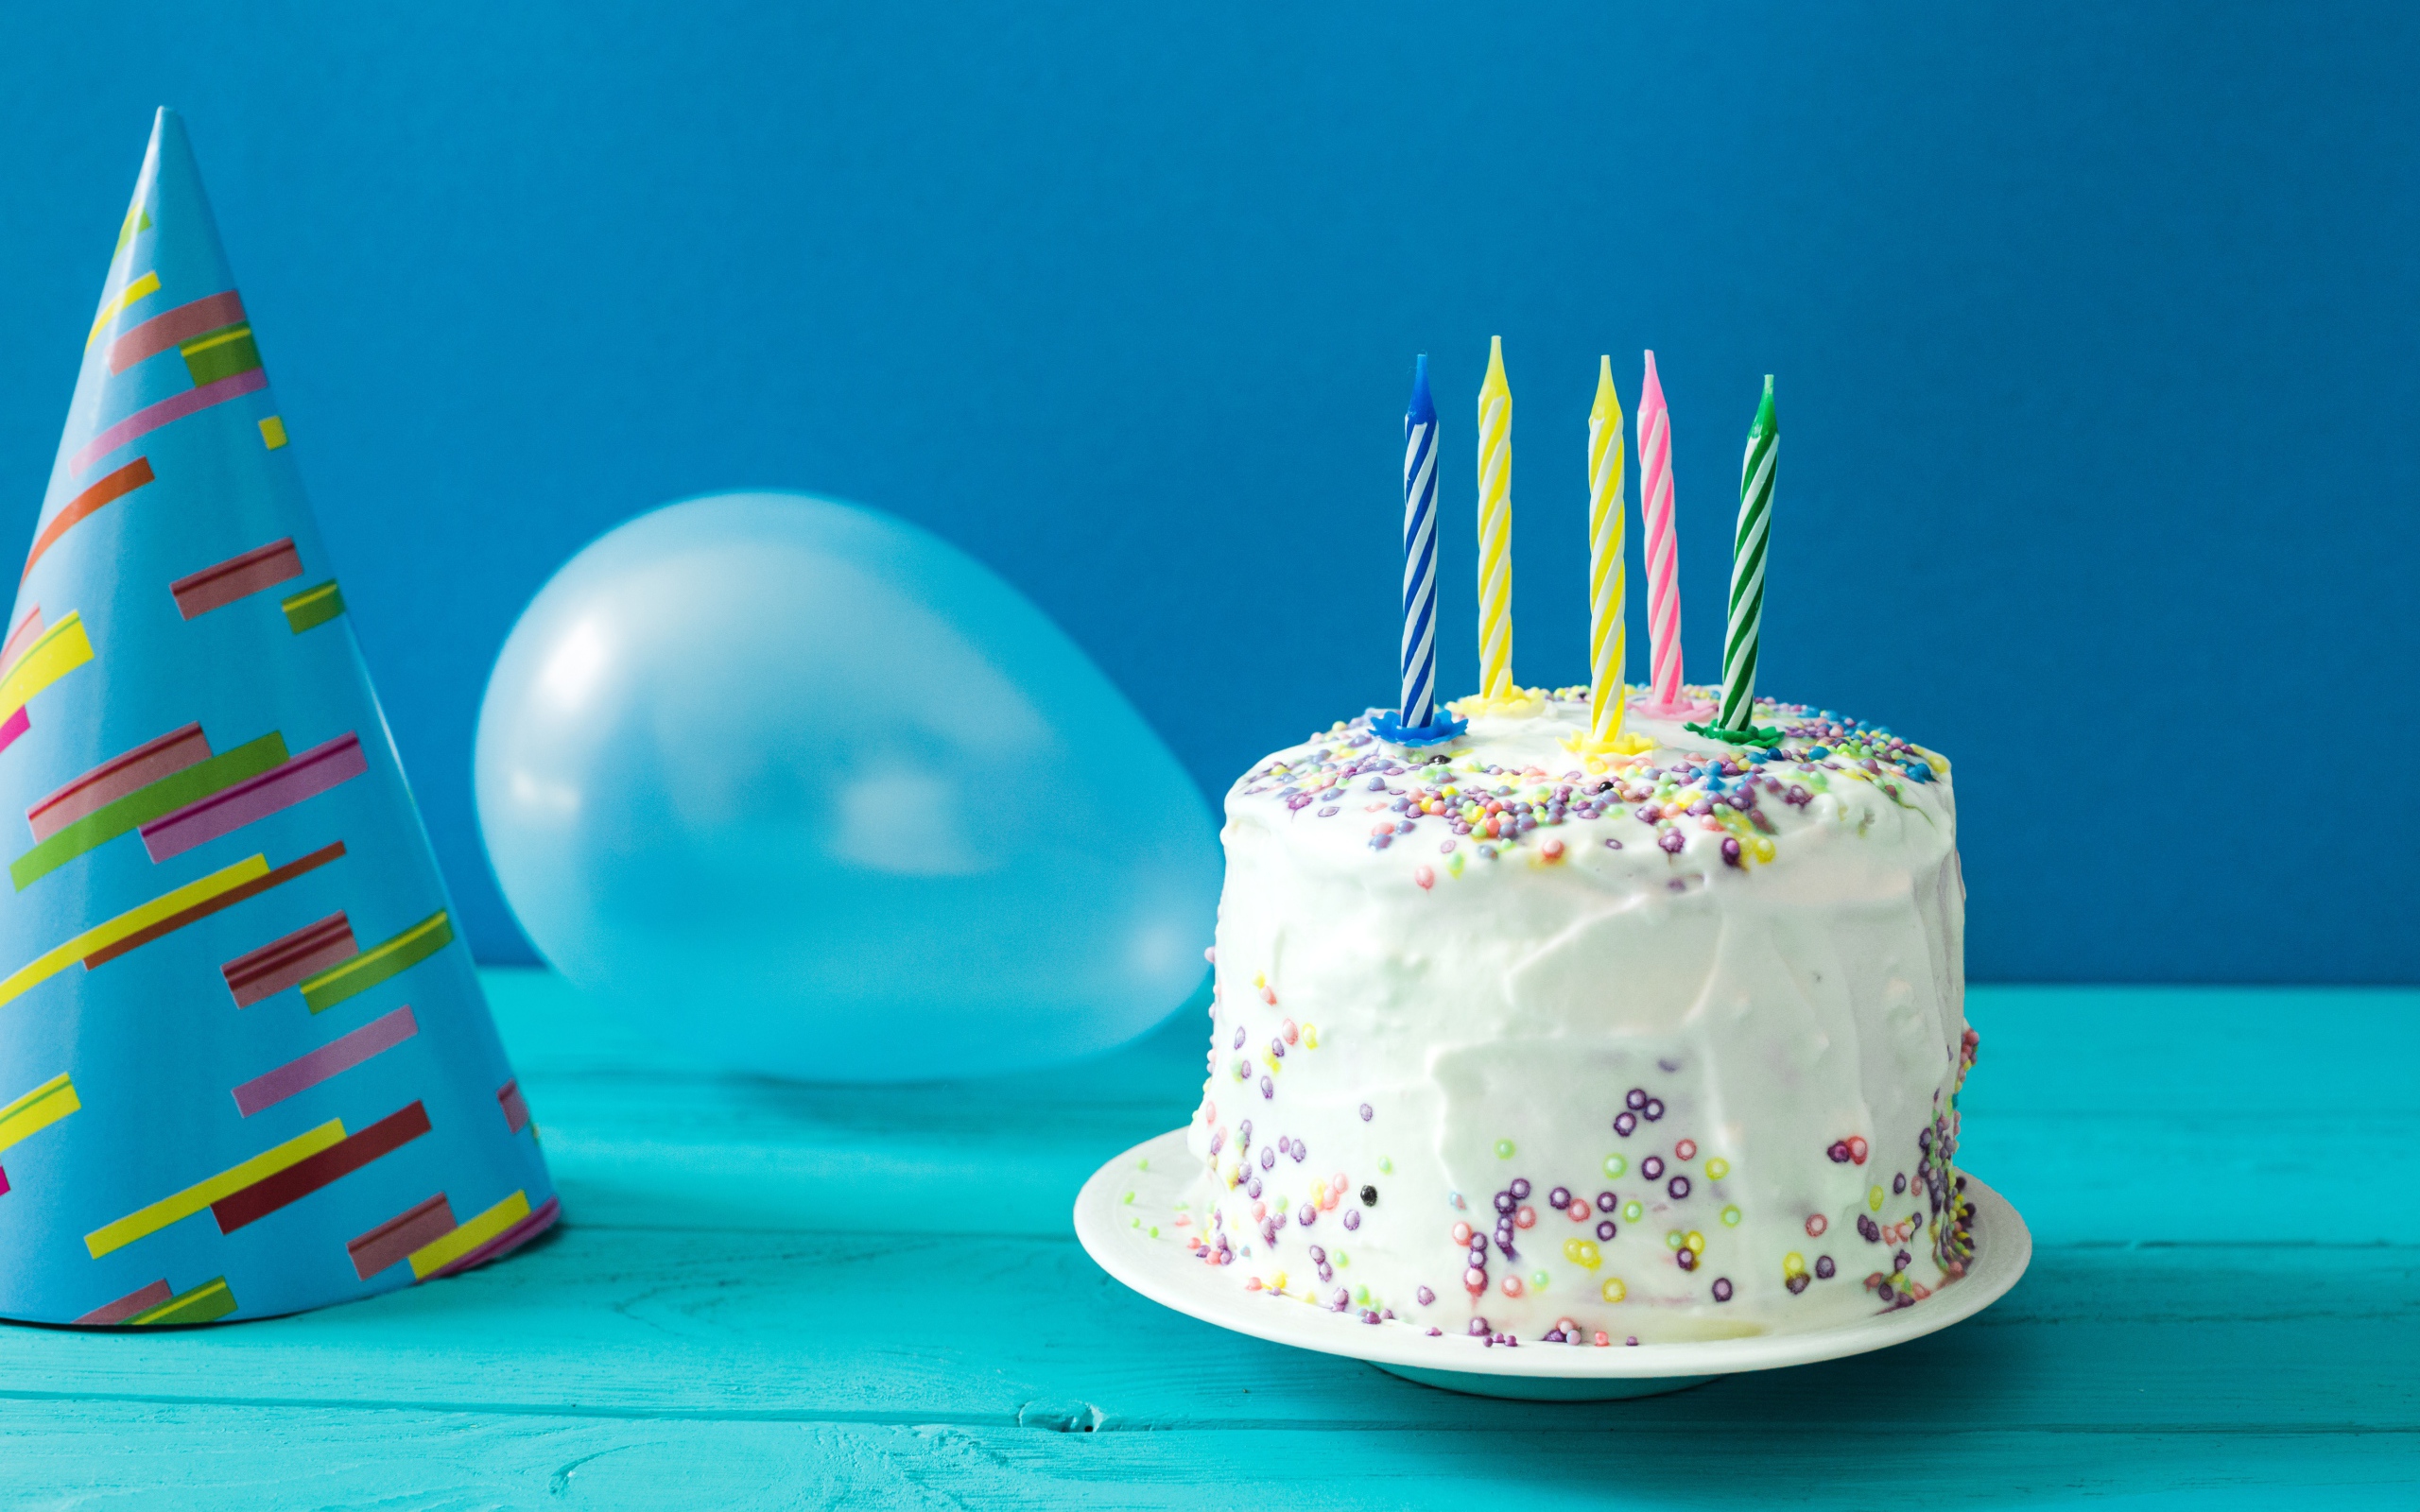 Праздничный торт со свечами, шариком и колпаком на голубом фоне